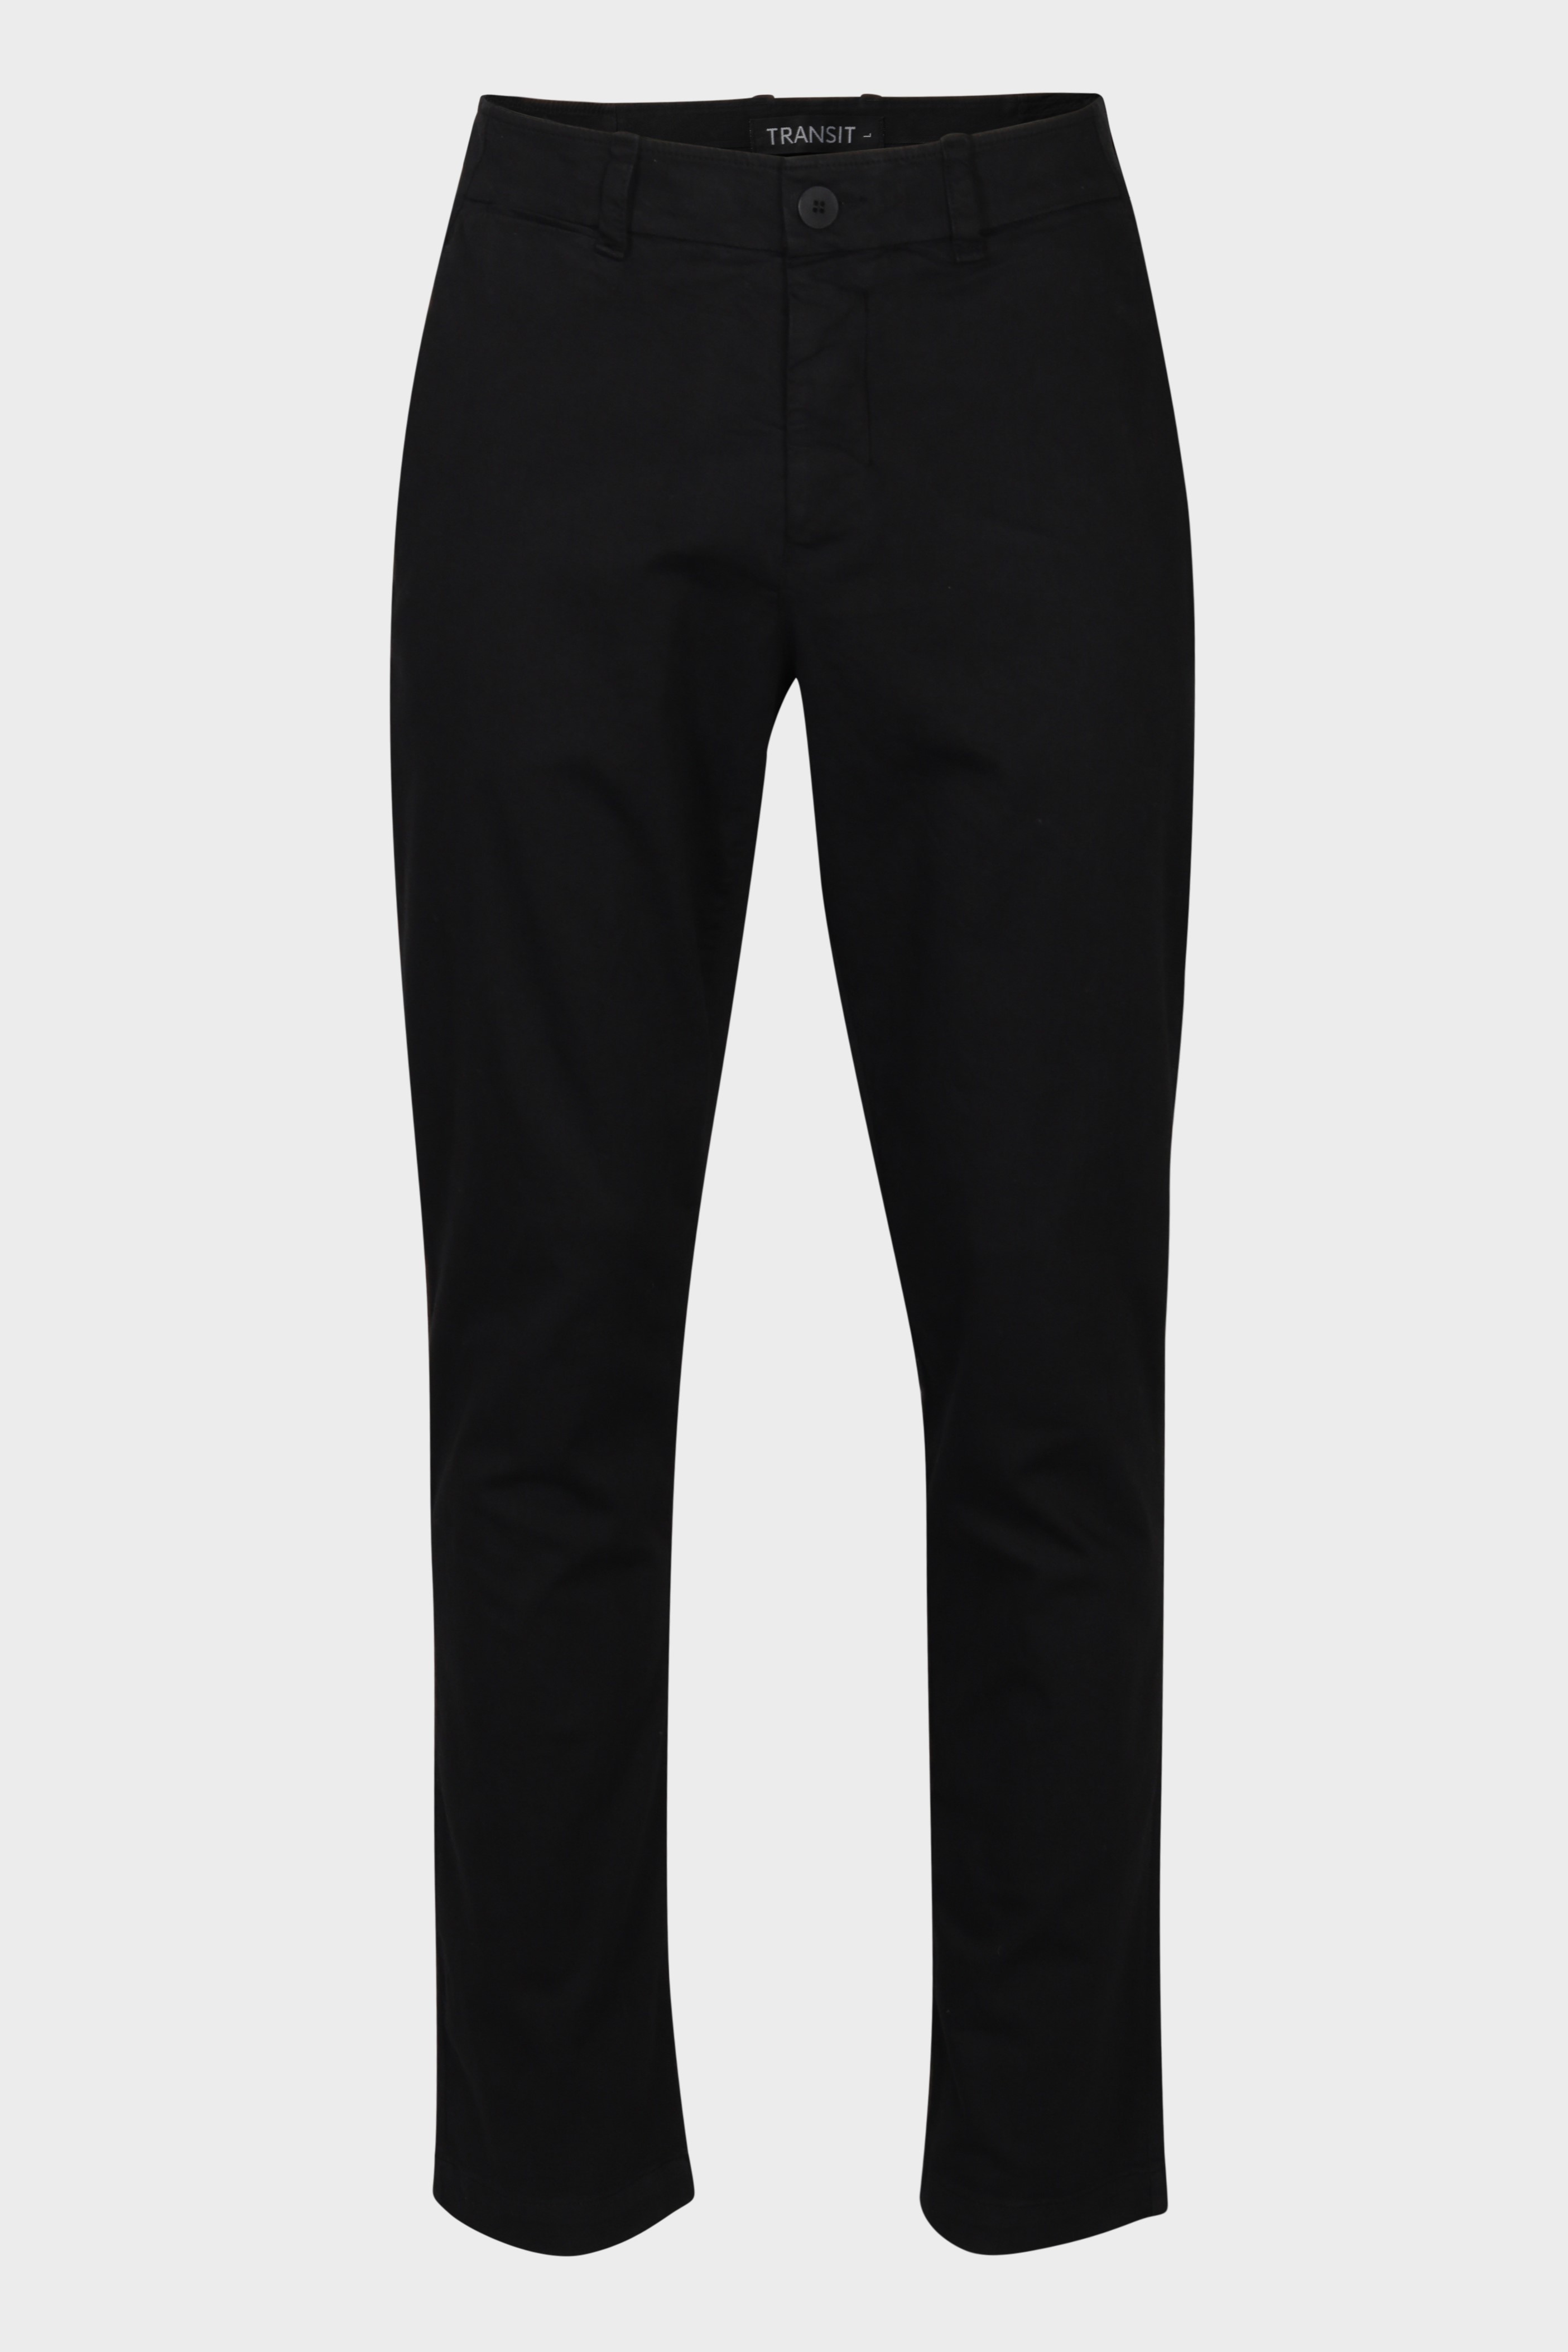 TRANSIT UOMO Cotton Stretch Pant in Black XL